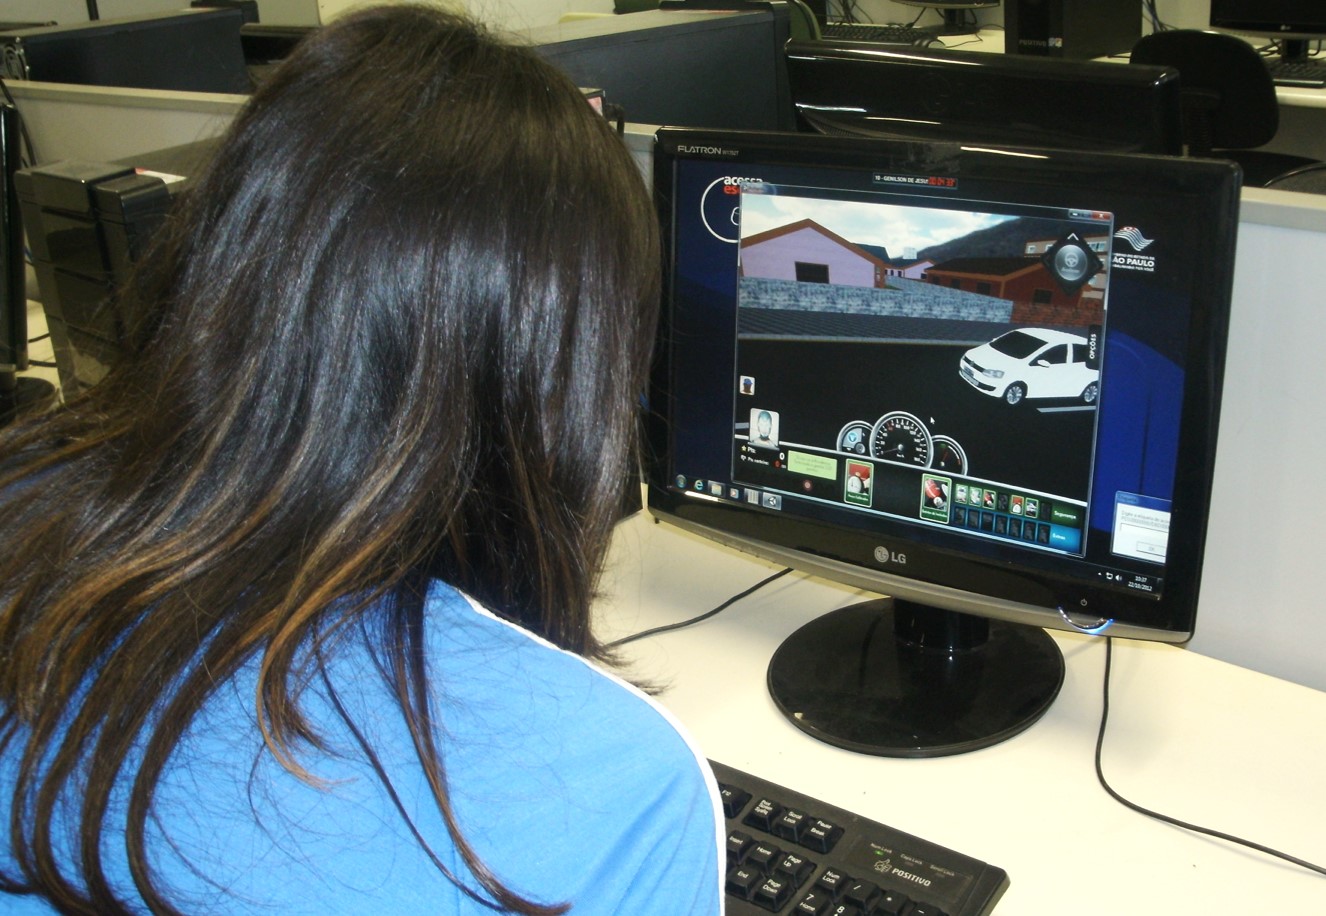 Aluna de costas olha para um monitor de computador com atividade do projeto Jogo da Vida em Trânsito na tela.